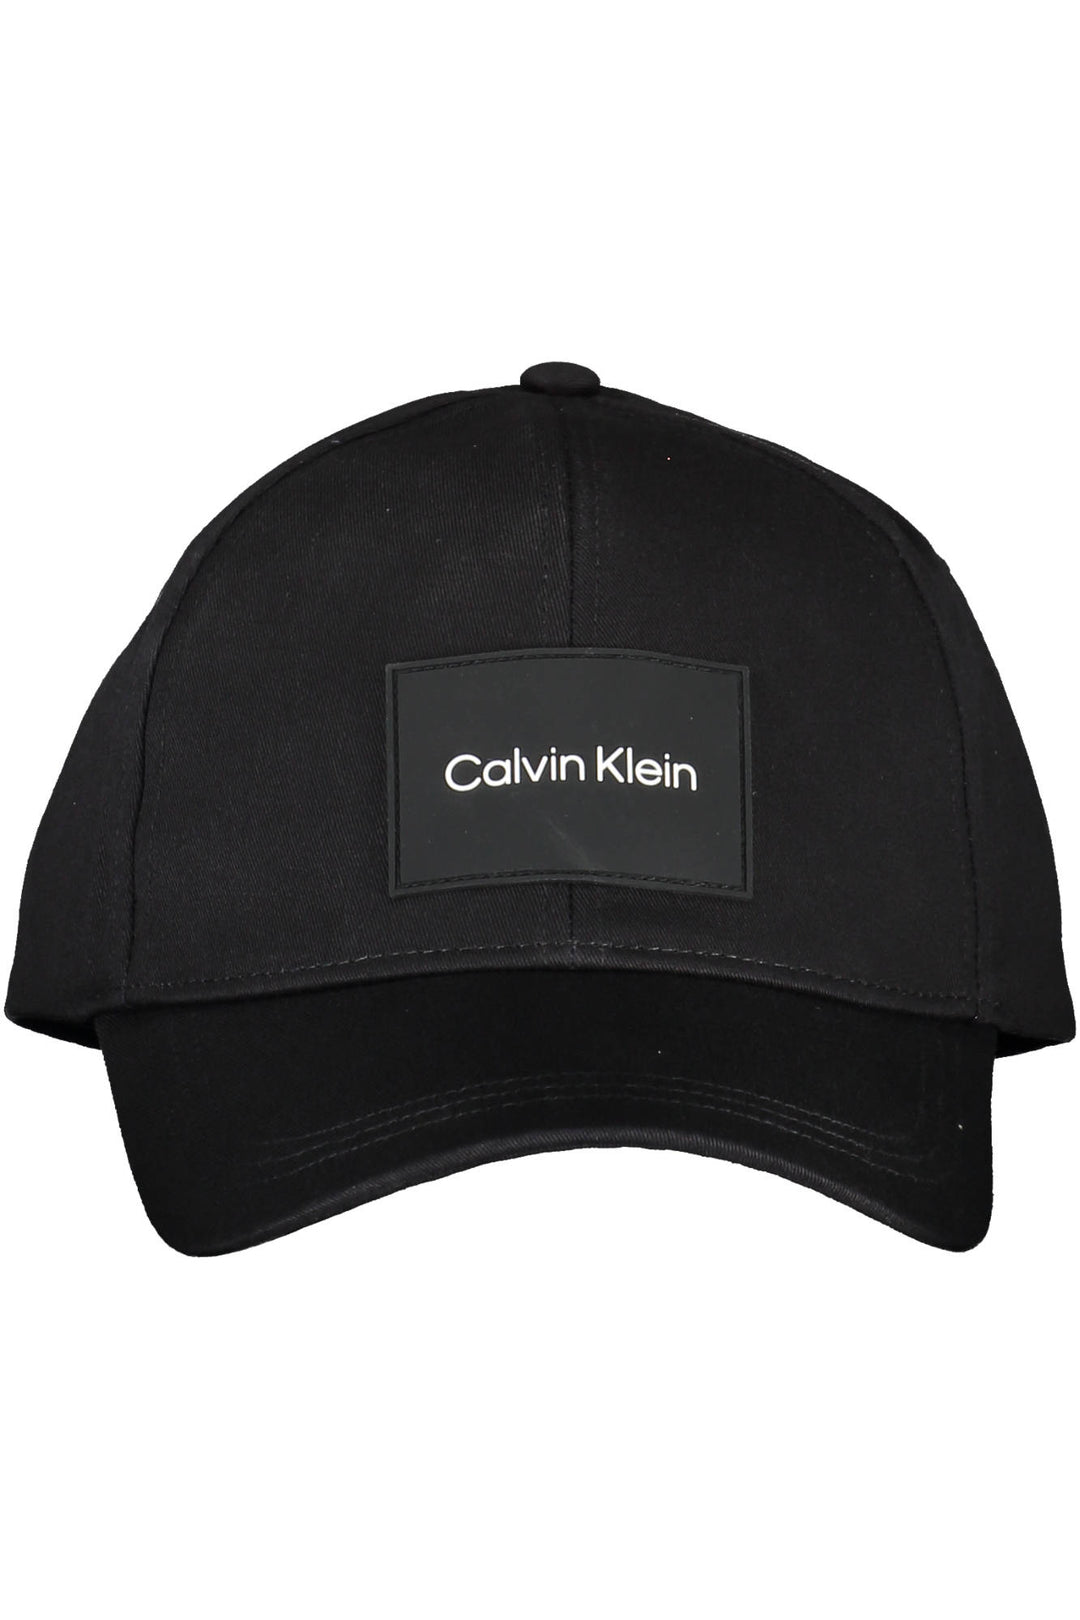 CALVIN KLEIN BLACK MEN&#39;S HAT